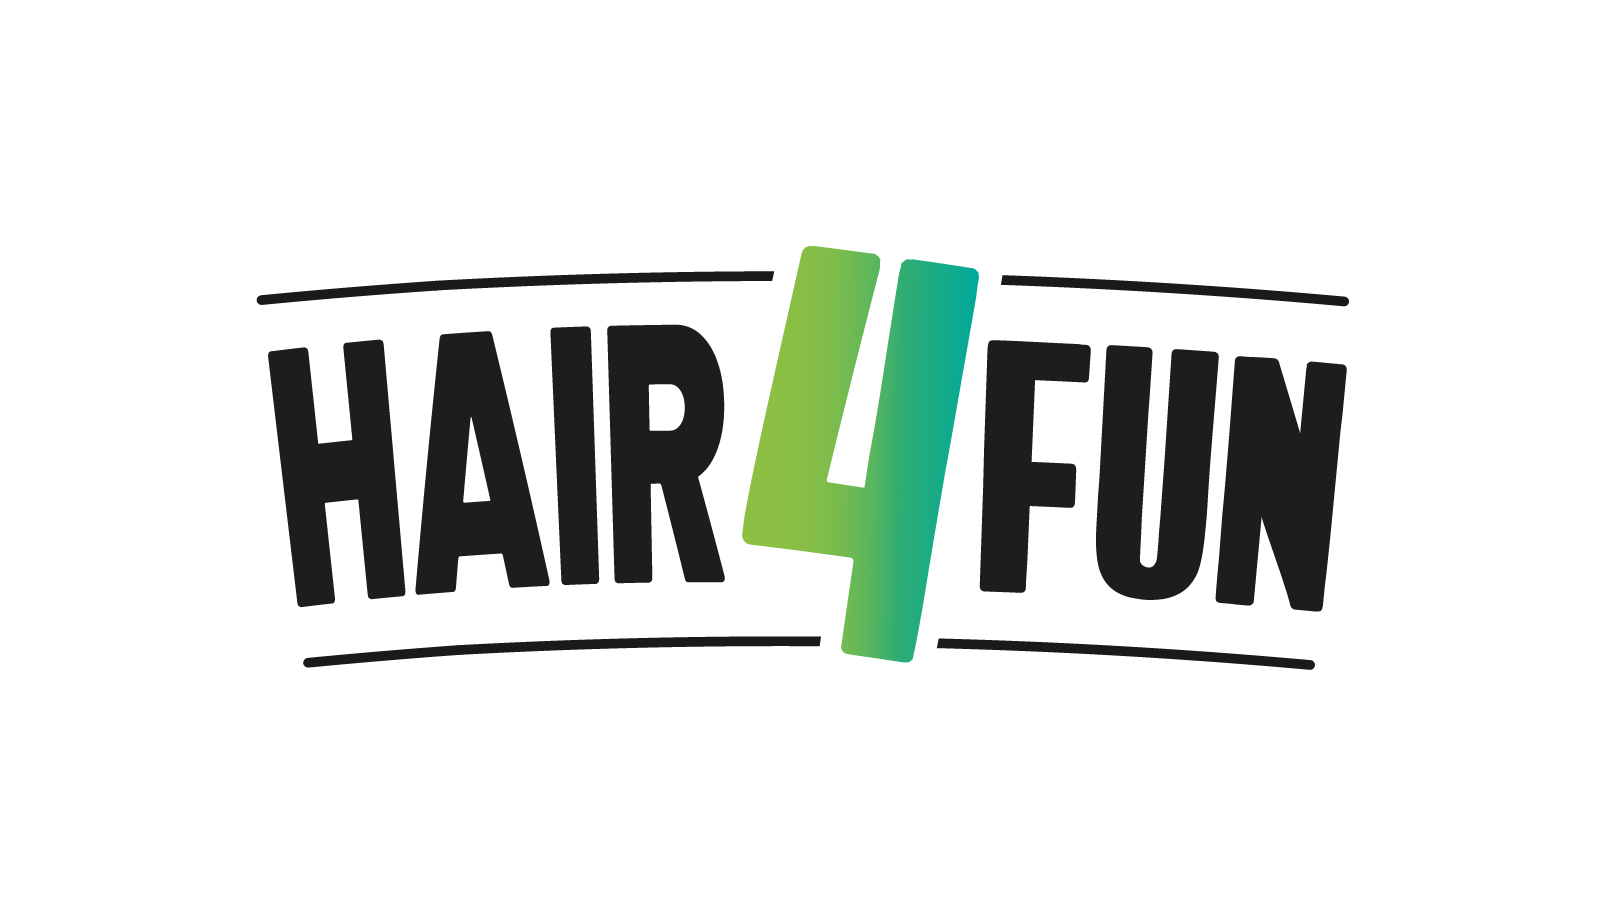 HAIR 4 FUN